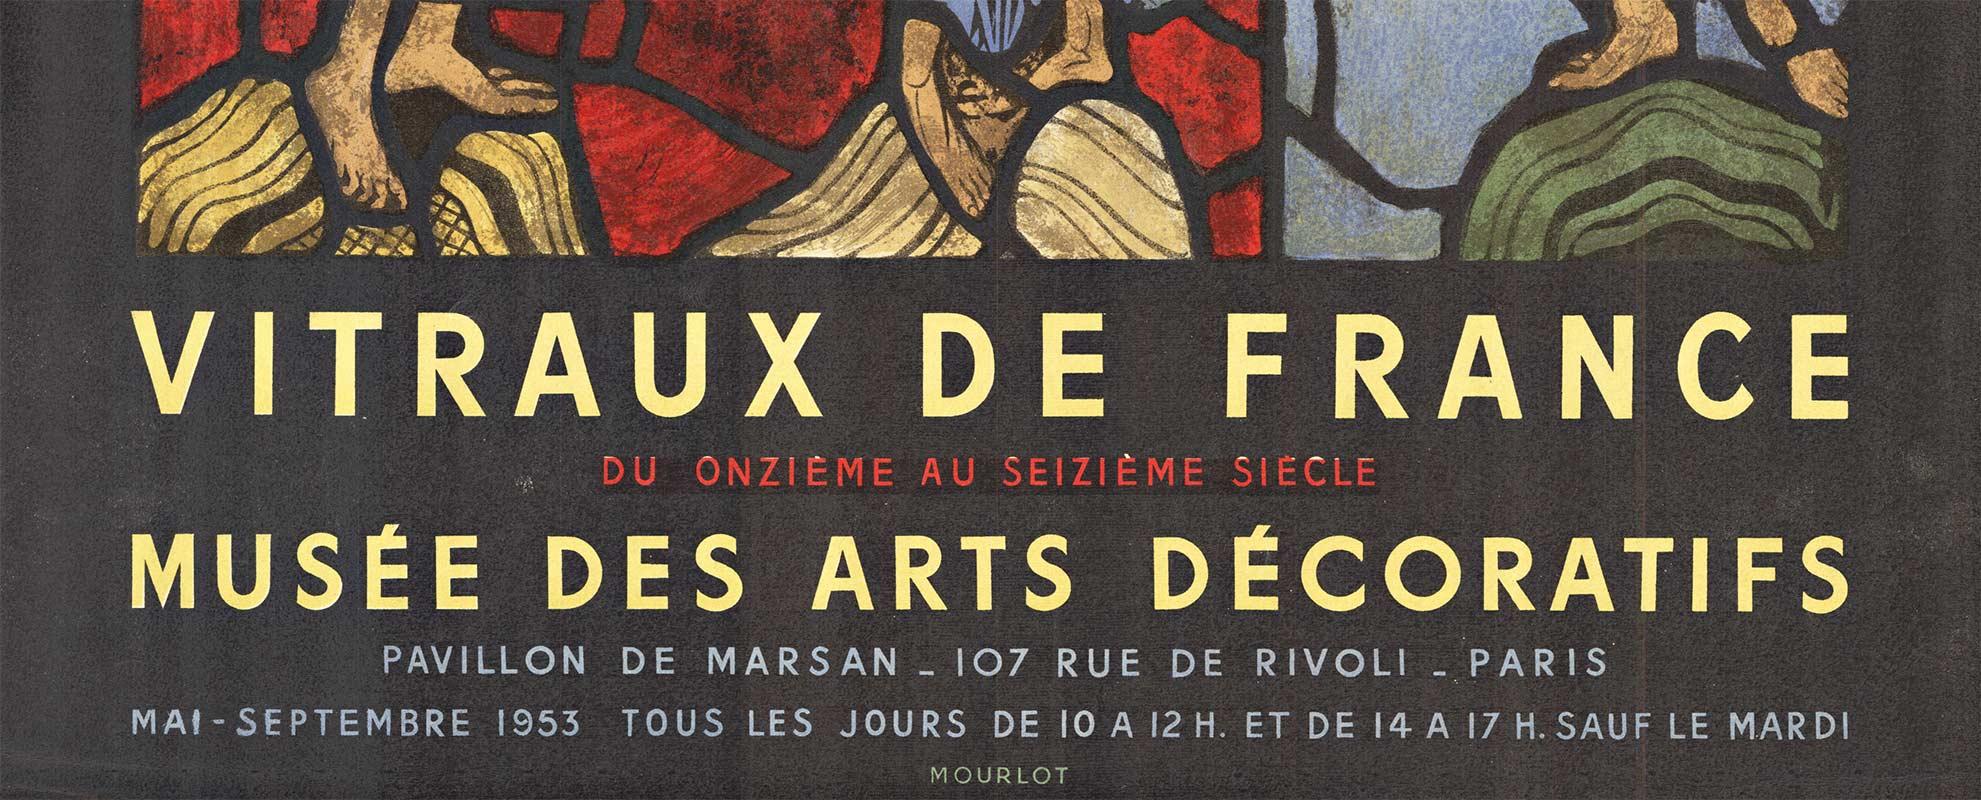 Vitraux De France, affiche vintage originale du Musée des Arts Décoratifs de Moulot - Art nouveau Print par Unknown